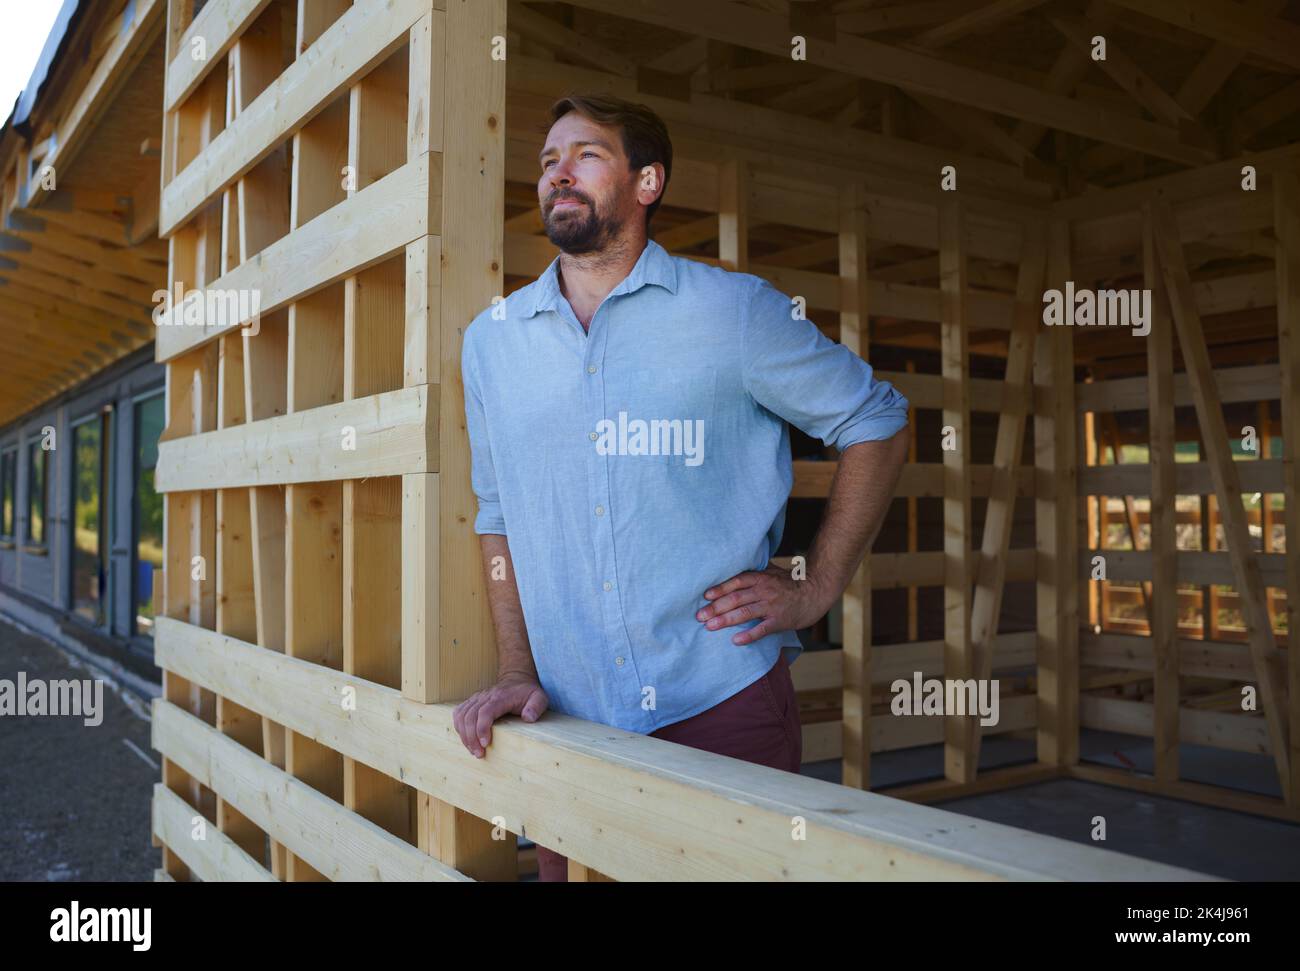 Uomo che guarda fuori dalla casa incompiuta, costruzione di eco-casa ecologica rinnovabile a basso consumo energetico sostenibile in legno . Foto Stock